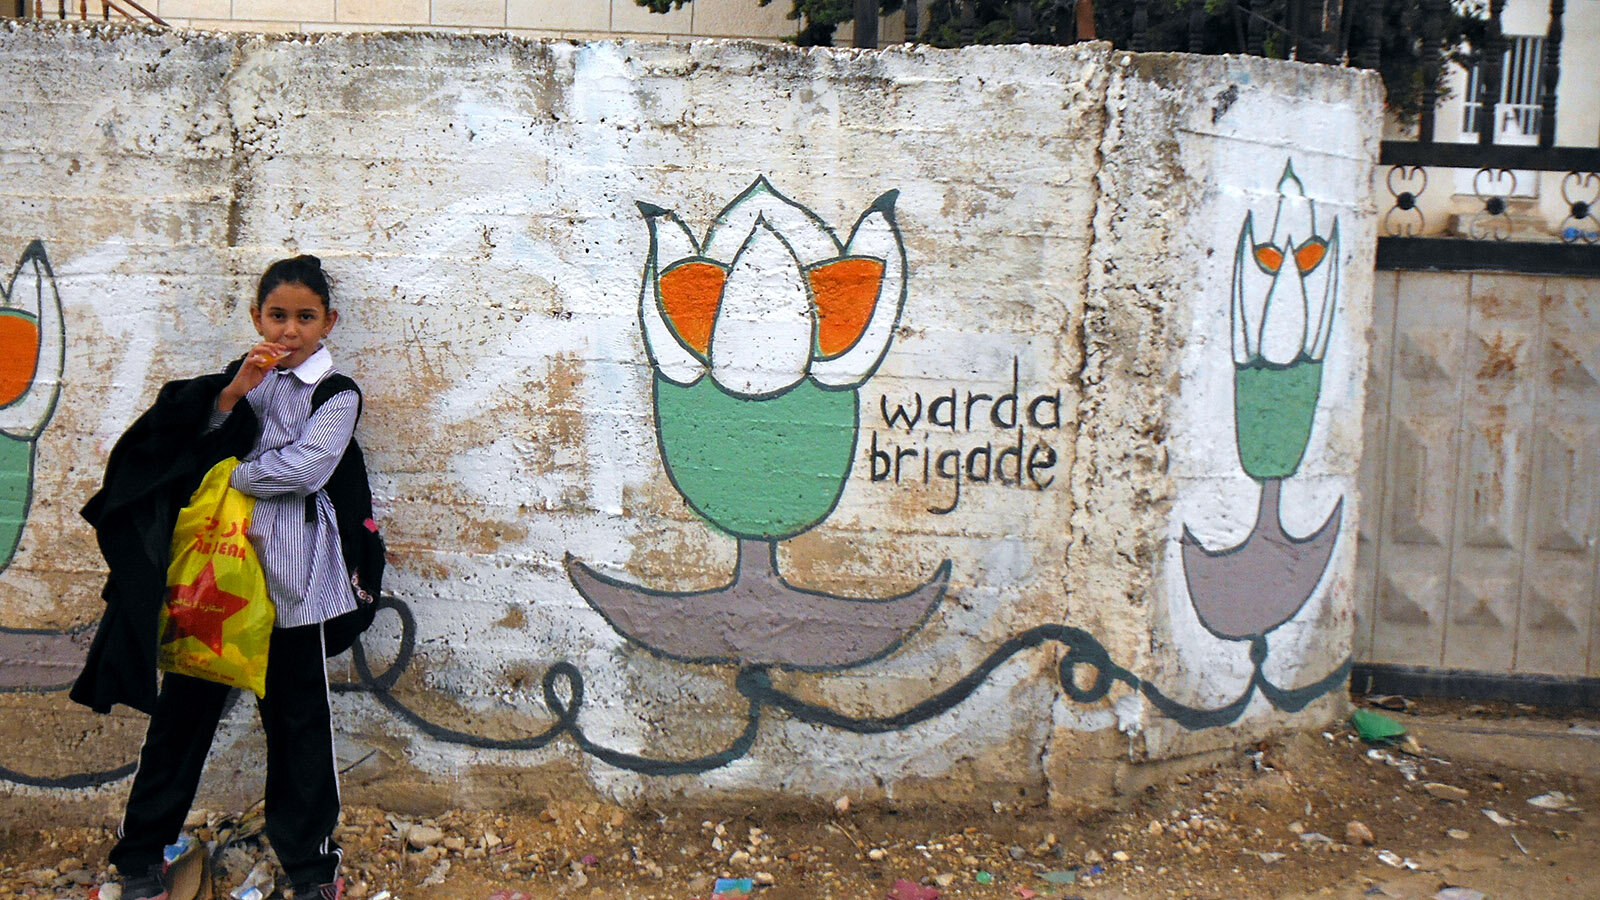 La Brigada Warda (Flor) sigue siendo una fuerza creativa para la protesta contra la ocupación en Bil'in.